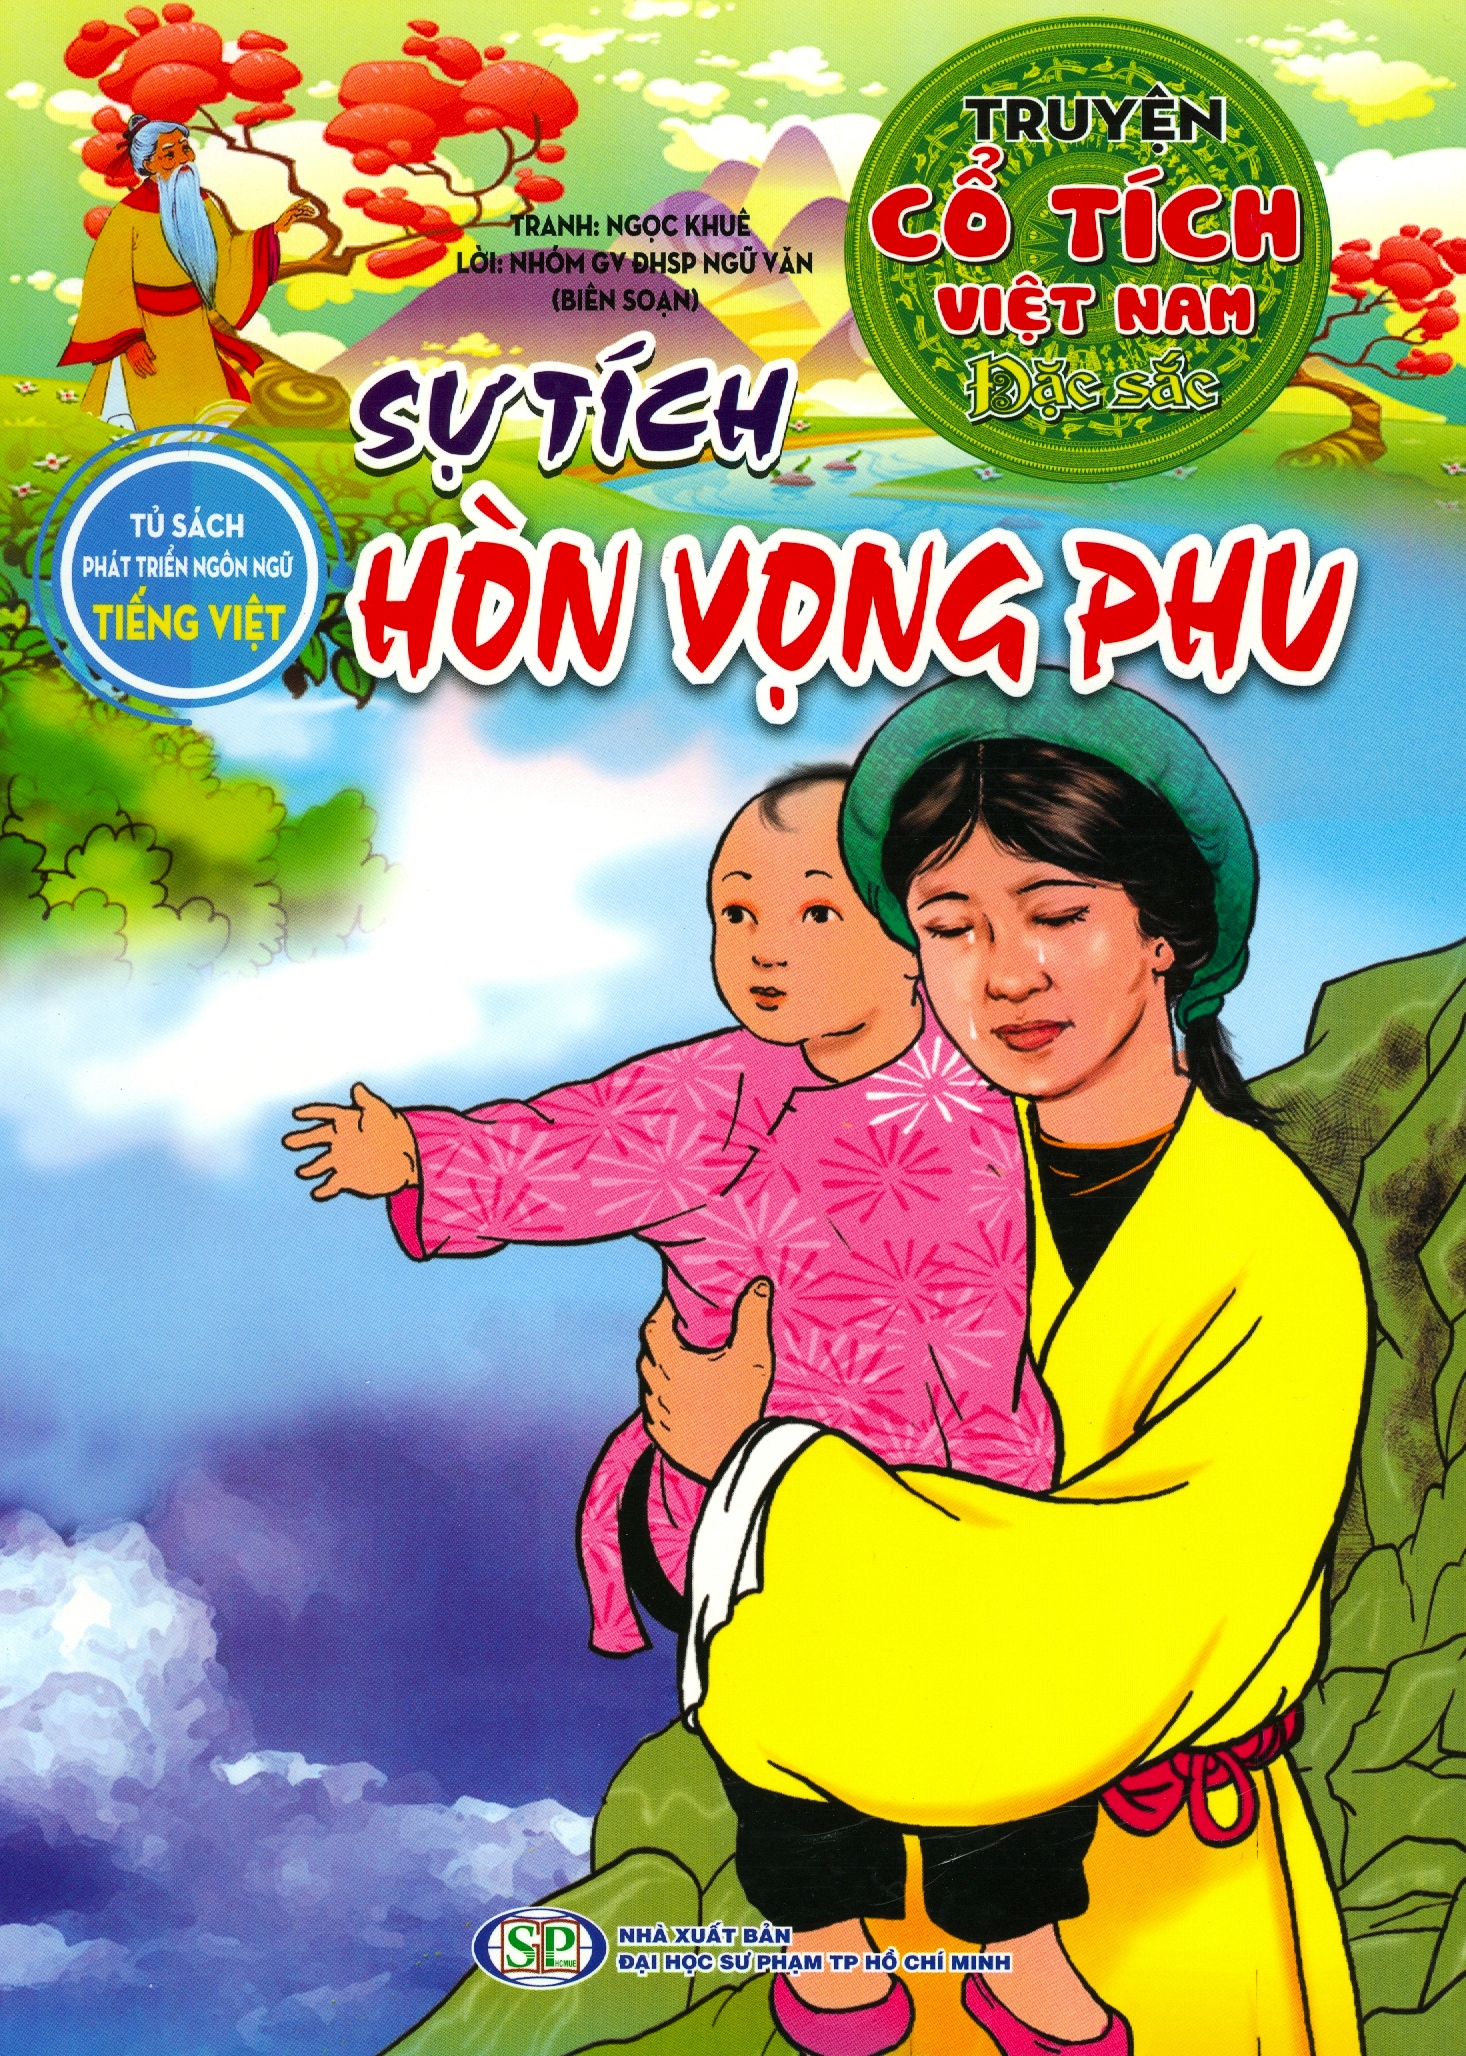 Truyện Cổ Tích Việt Nam Đặc Sắc – Sự Tích Hòn Vọng Phu